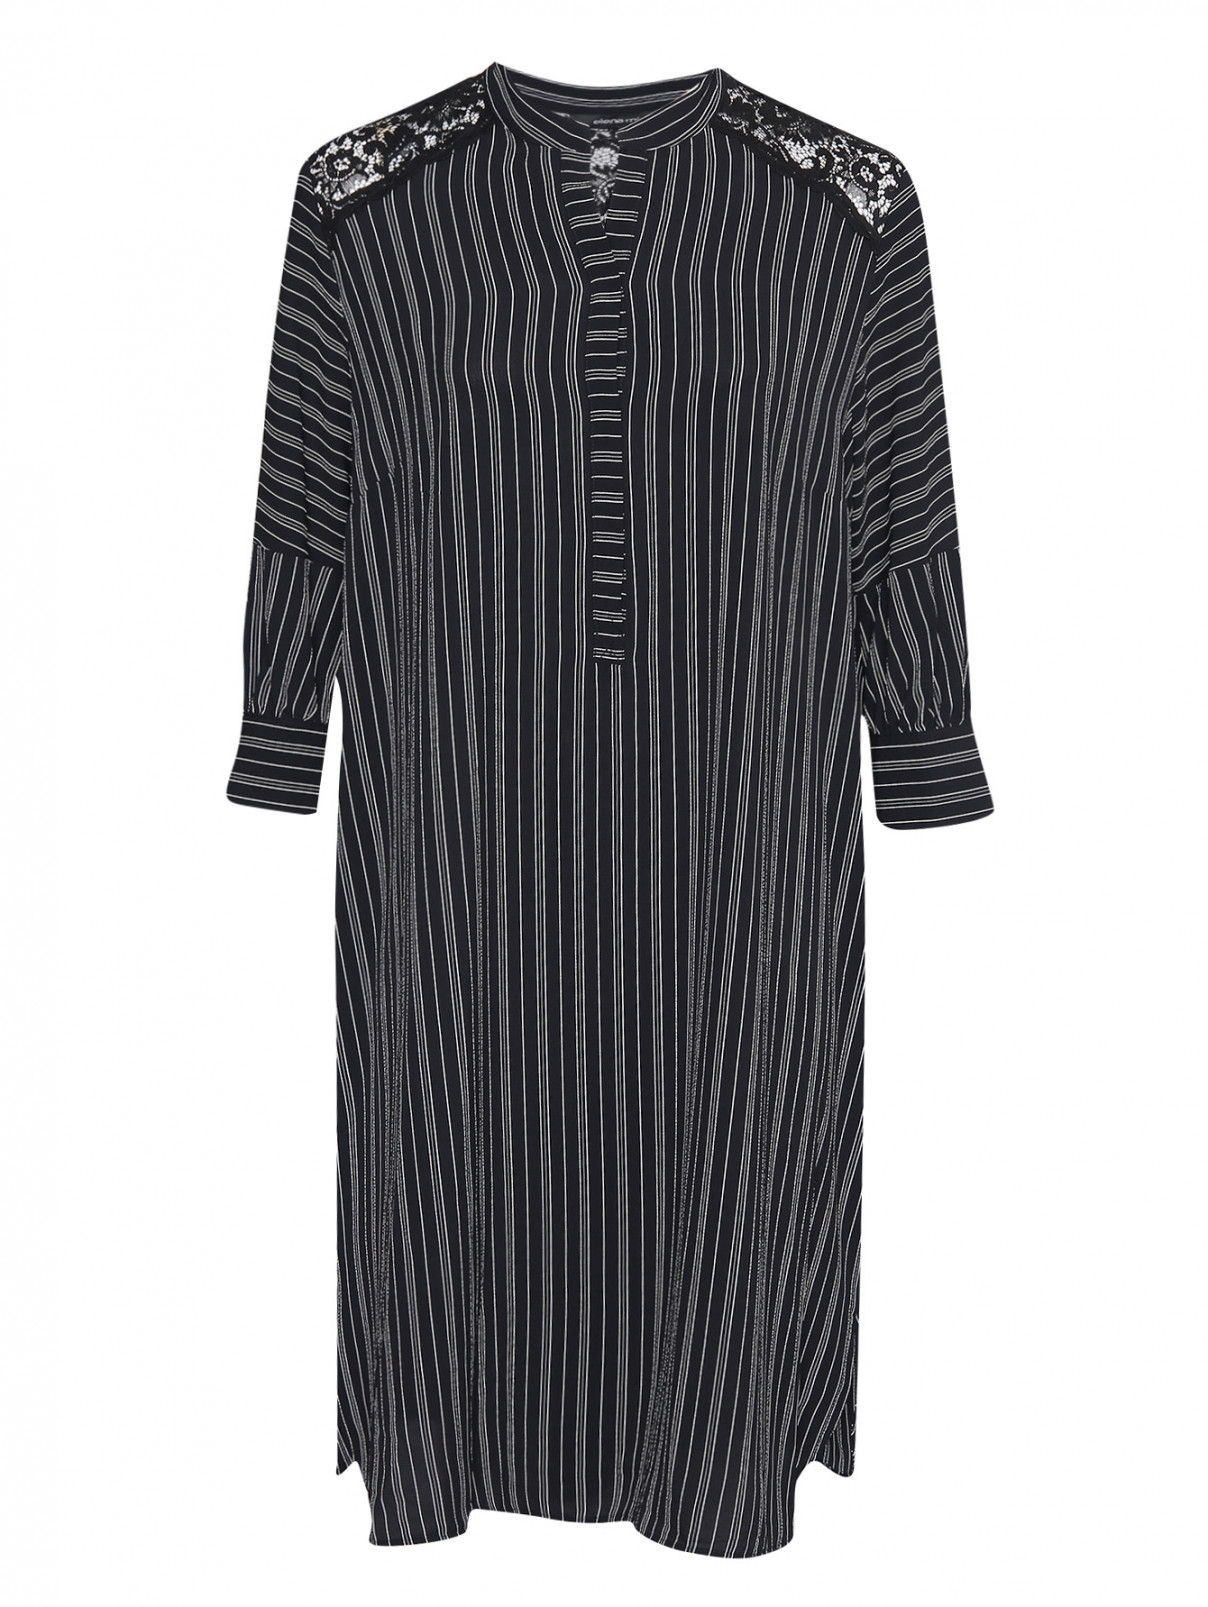 Платье свободного кроя с узором полоска Elena Miro  –  Общий вид  – Цвет:  Черный